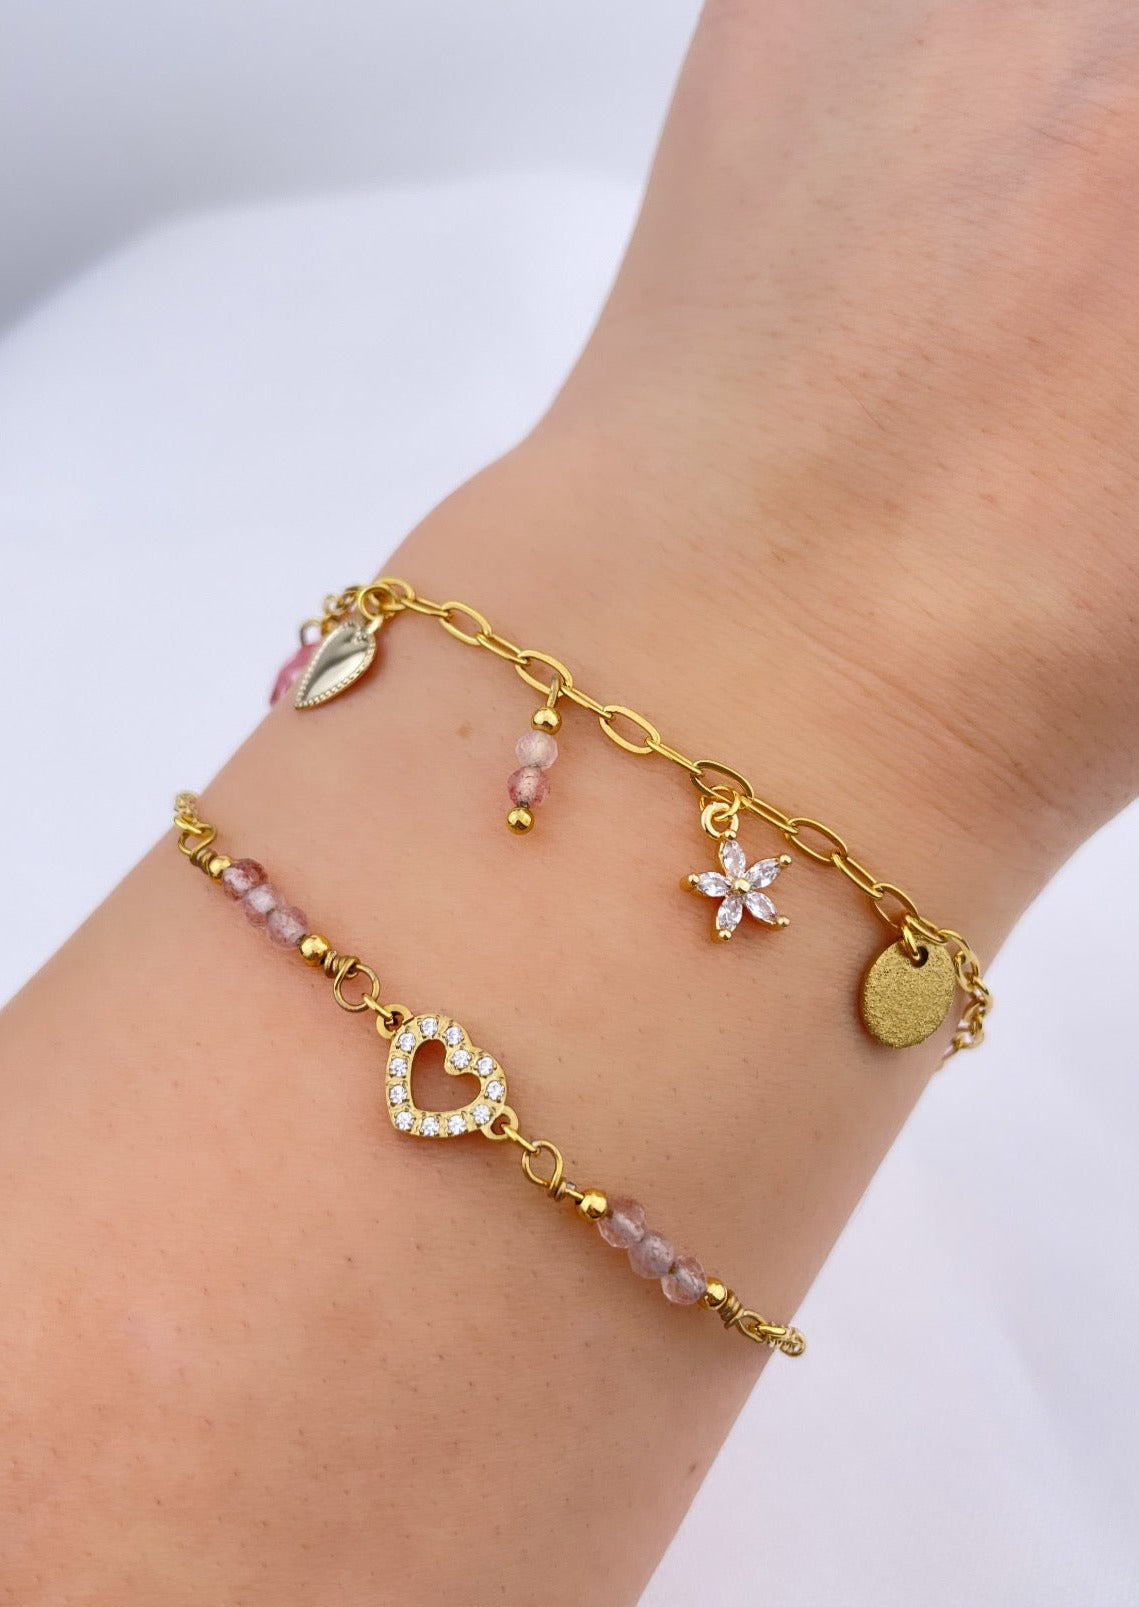 LOVE - Bracelet doré, pierres naturelles (Quartz), coeur et zirconium